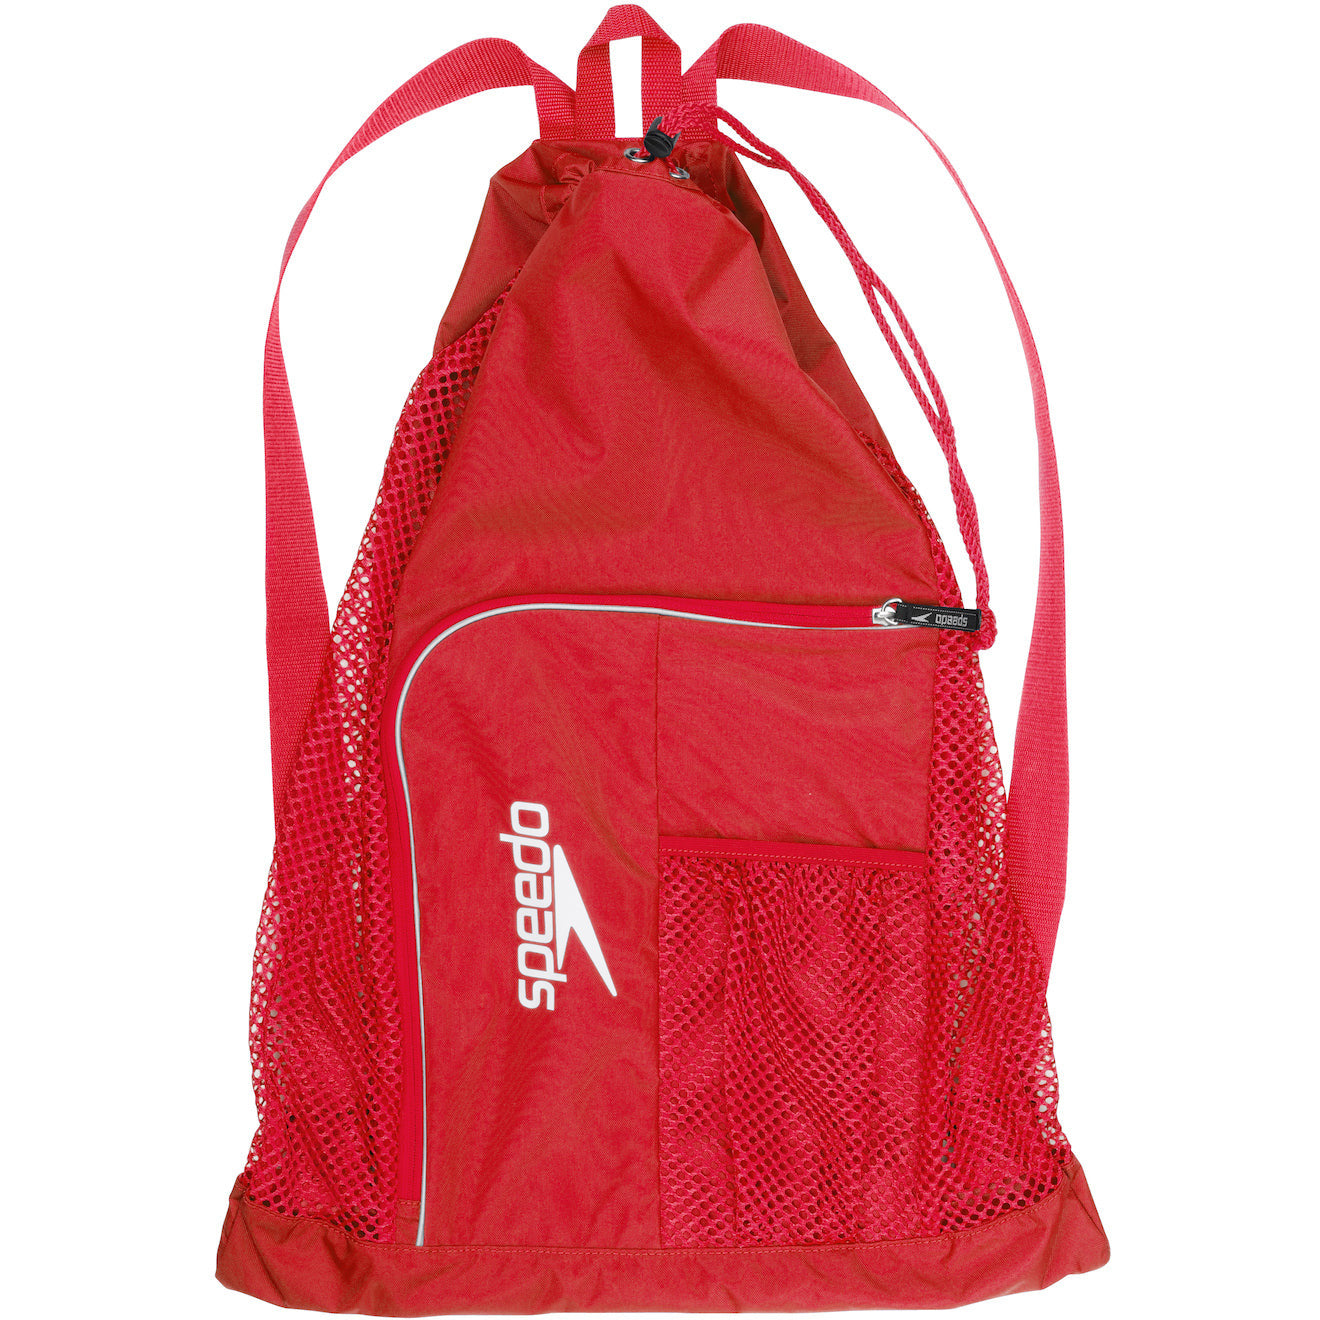 Speedo Deluxe Ventilator Backpack